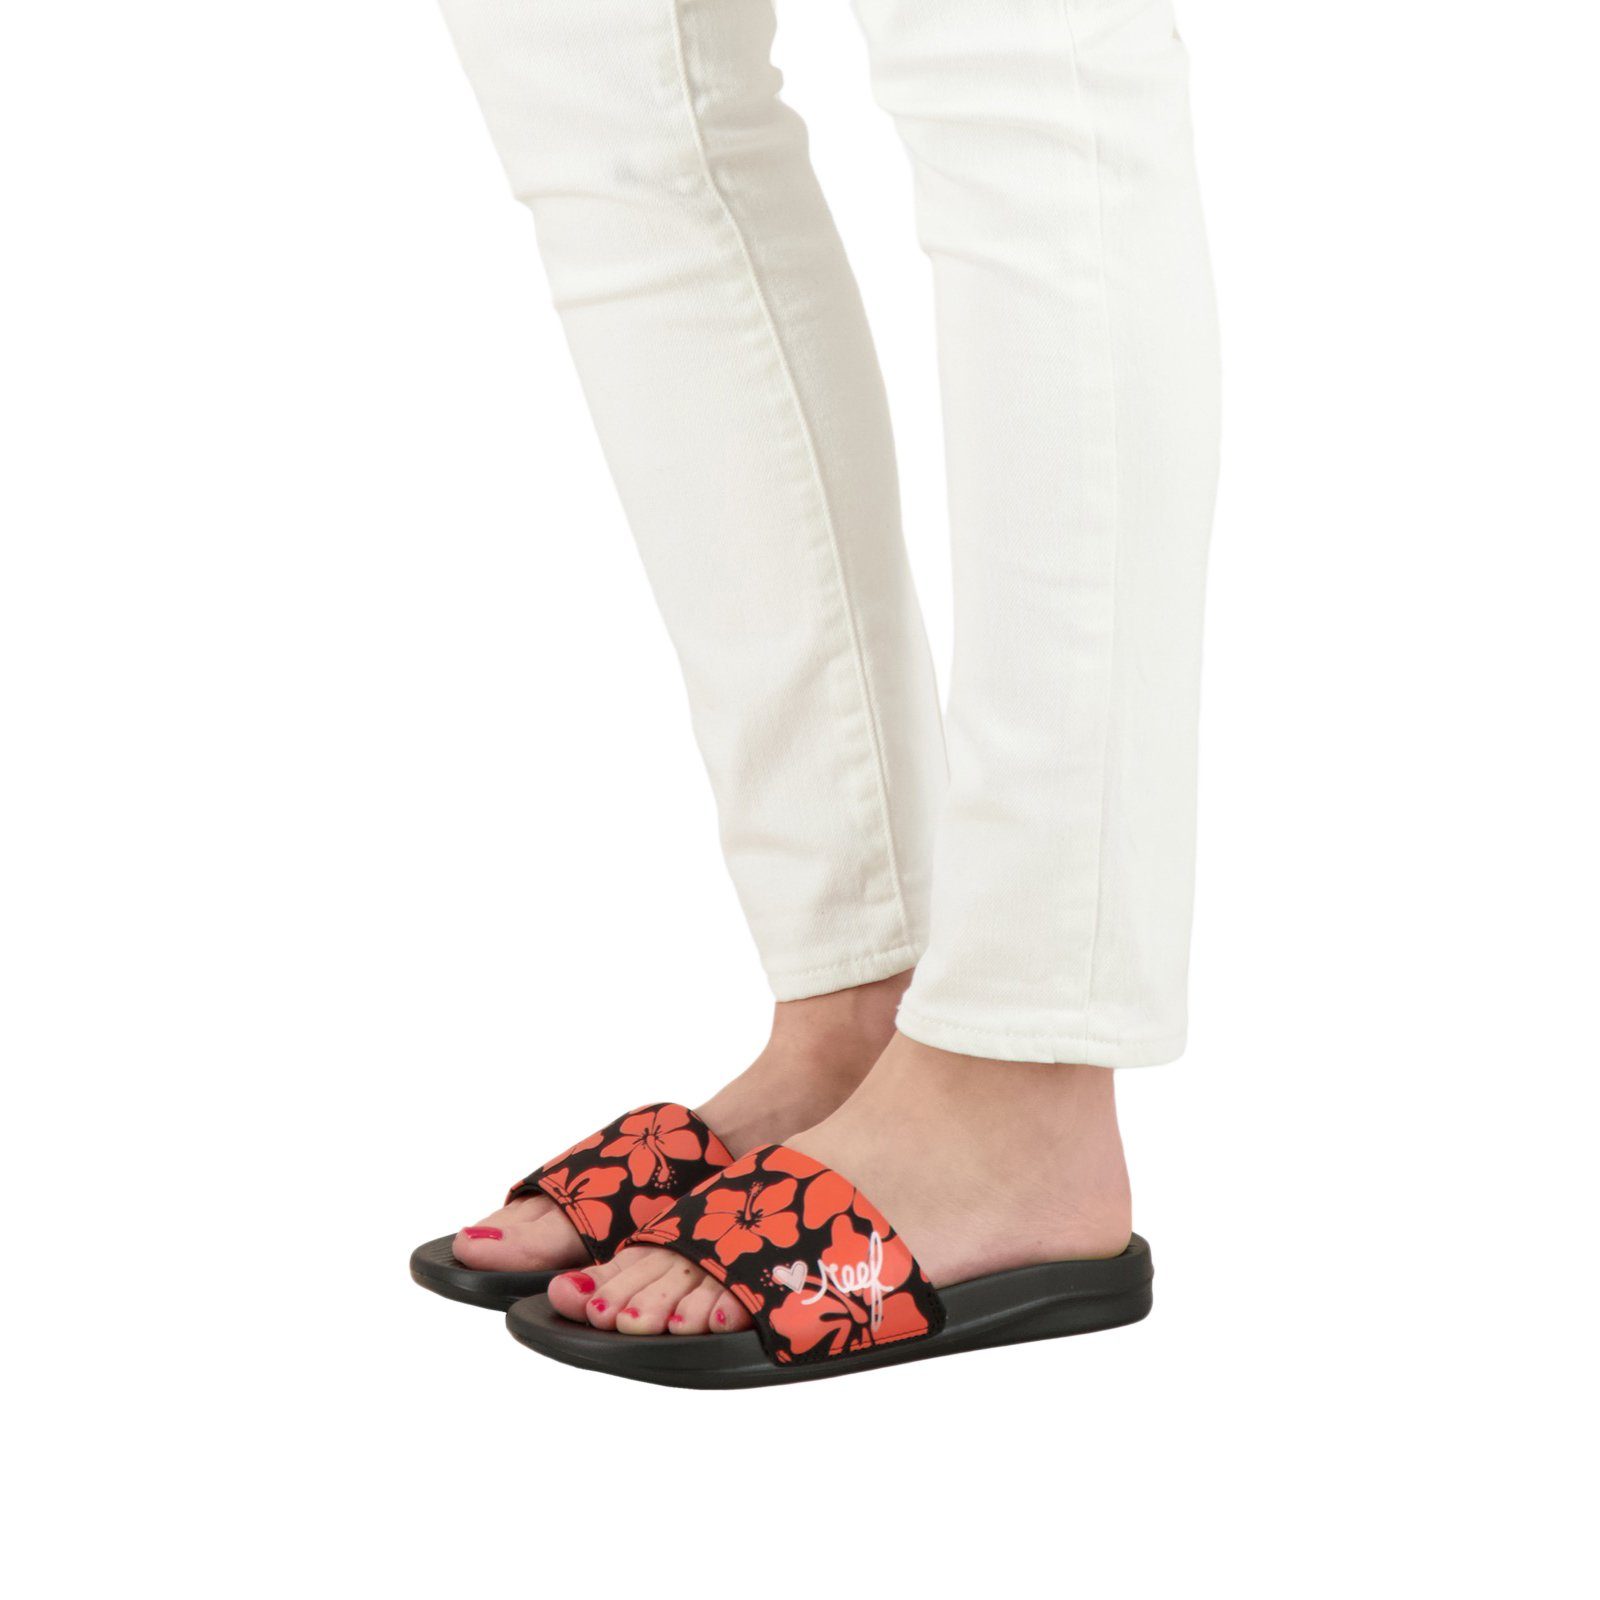 Reef Slipper One Anatomisch EVA geformtes Hibiscus Slide Fußbett,Leichte Sohle Sandale